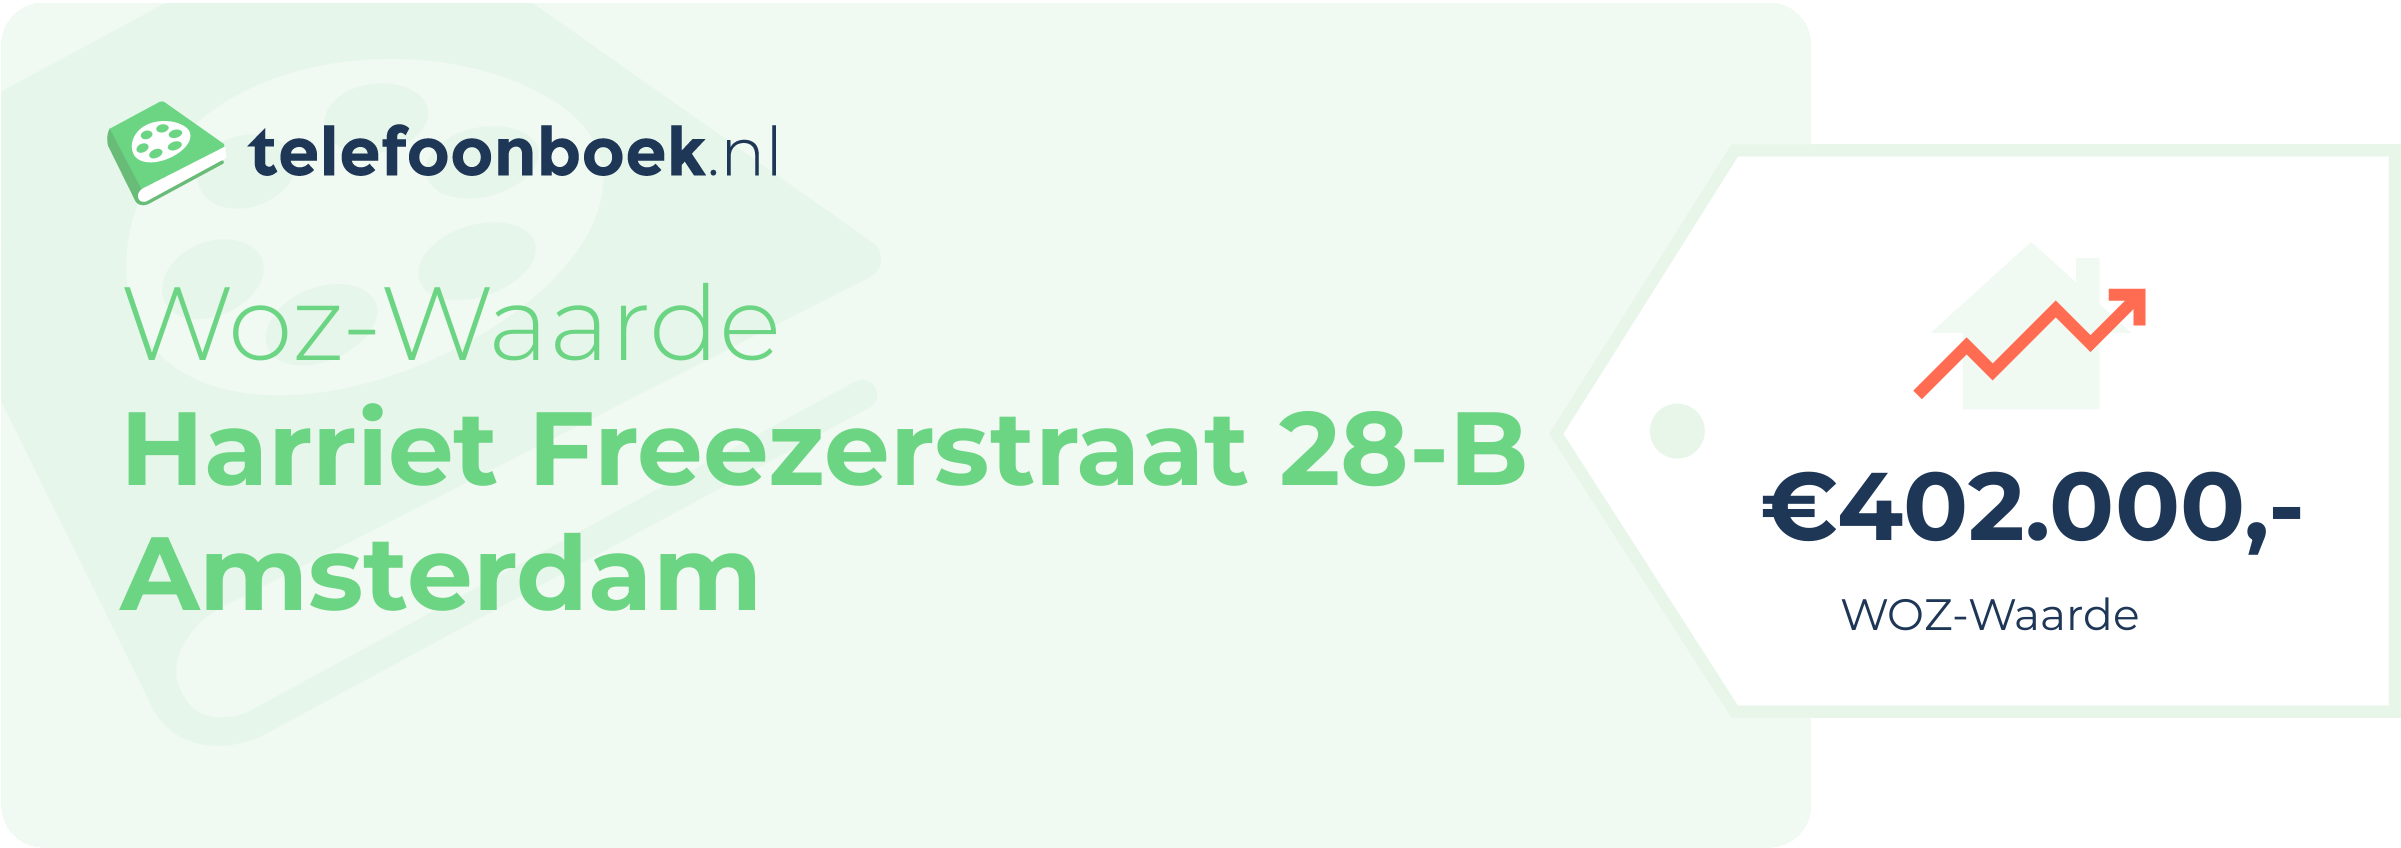 WOZ-waarde Harriet Freezerstraat 28-B Amsterdam